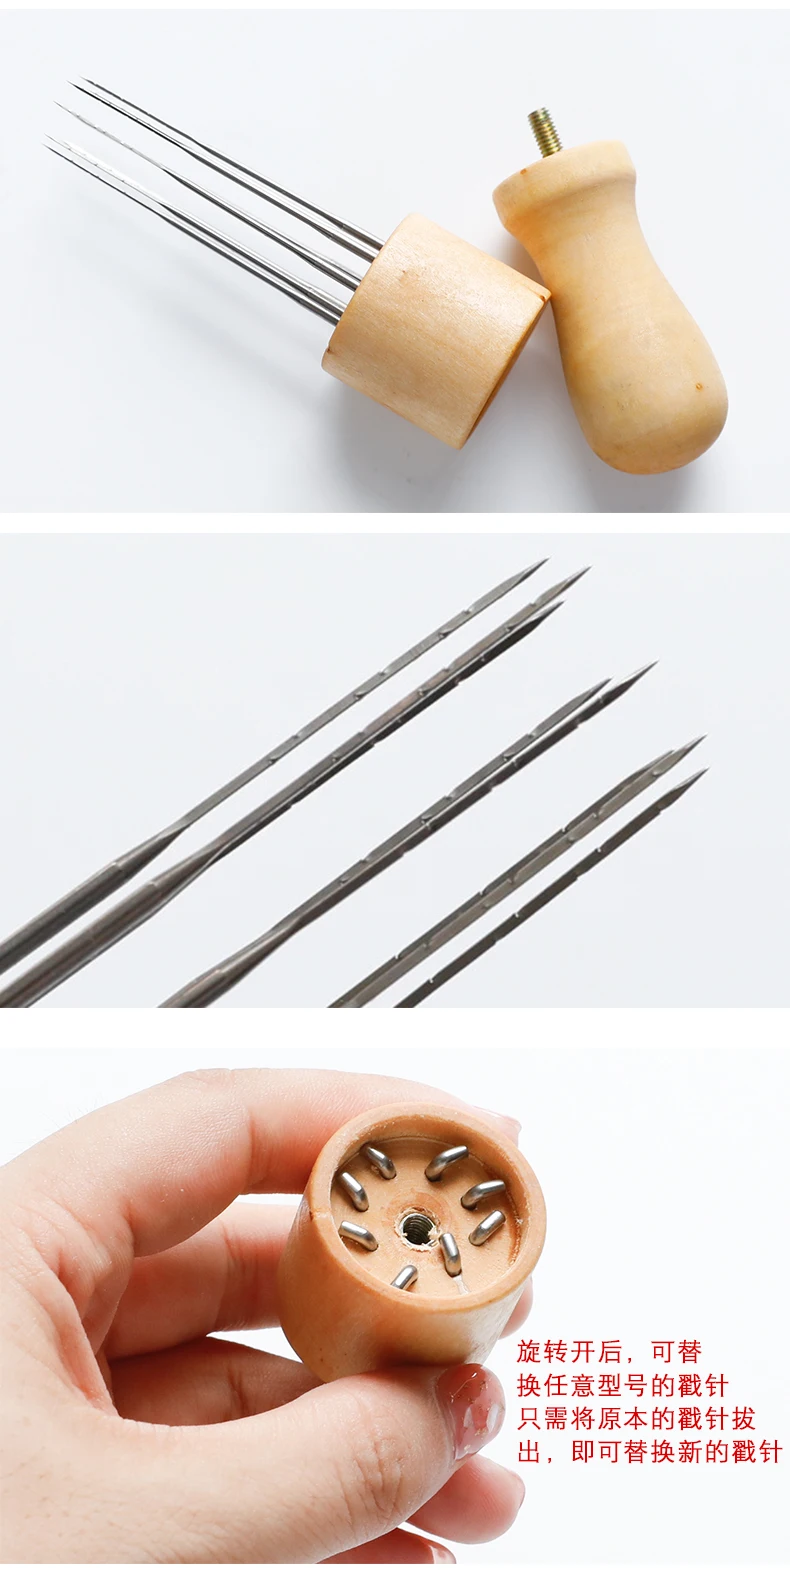 DIY шерстяной войлок доска игла деревянная ручка длинный 8 pin poke ручка novice ручной инструмент быстрое валяние